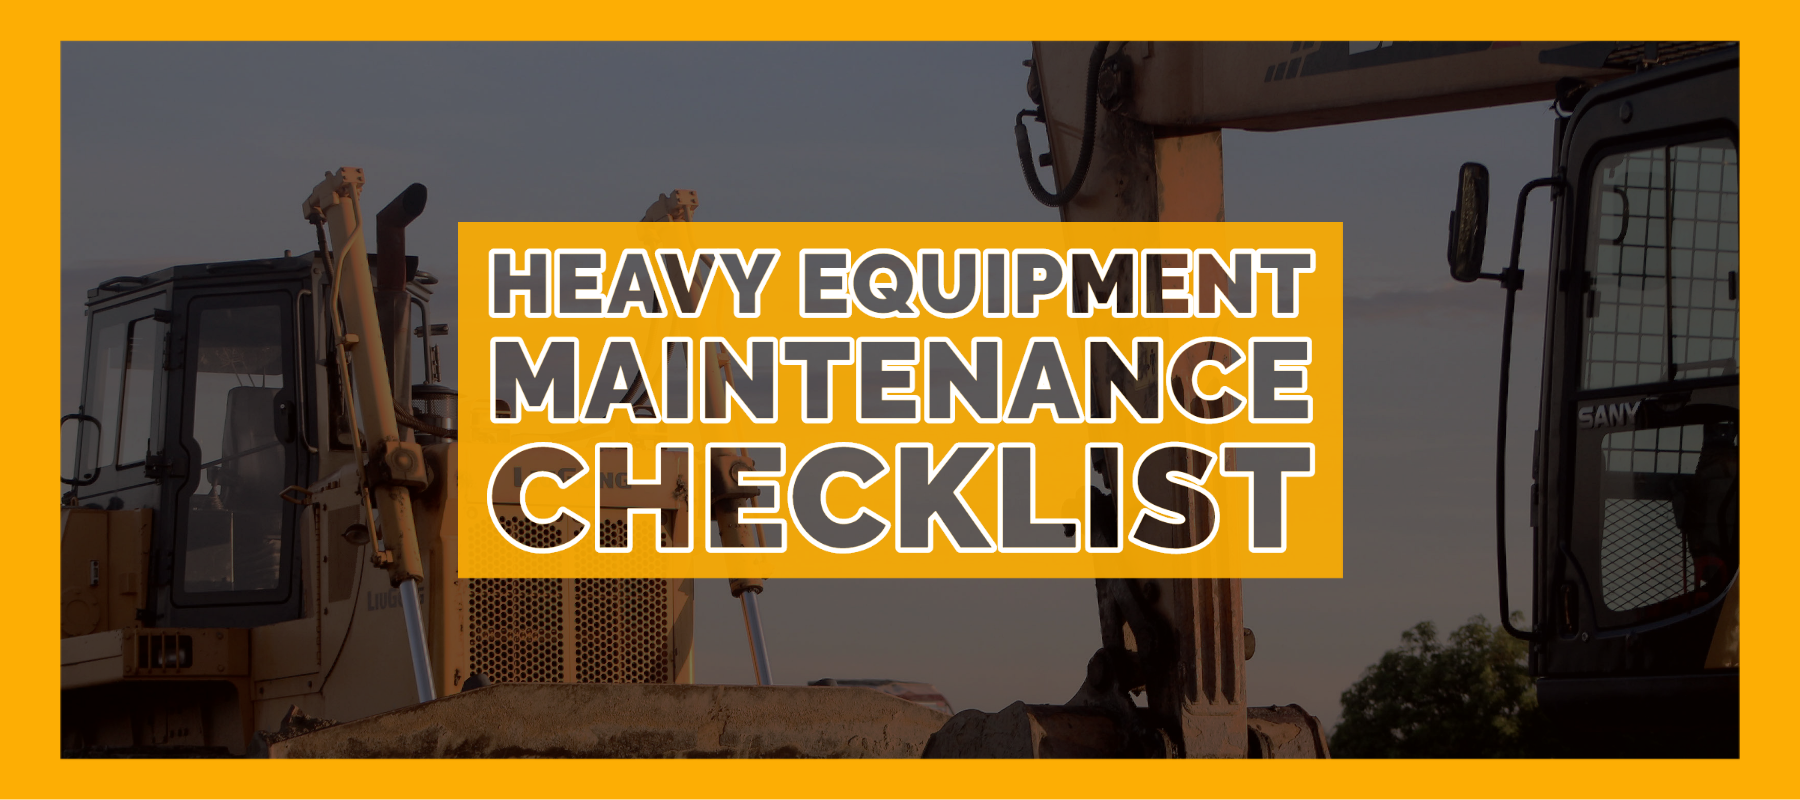 Diesel Laptops - Heavy Equipment Maintenance Checklist